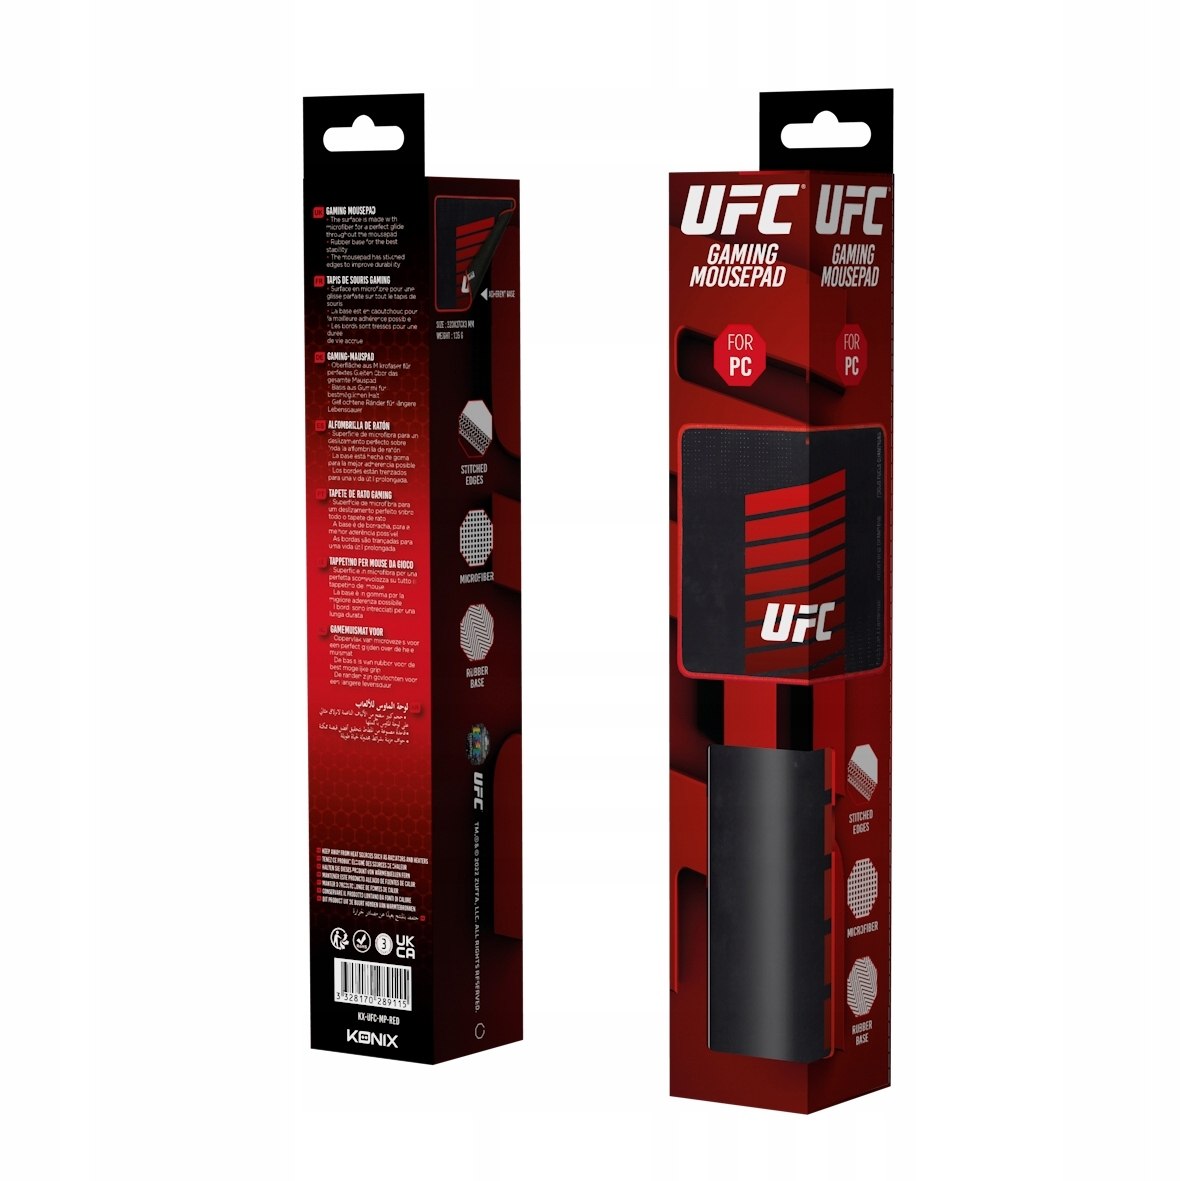 PODKŁADKA POD MYSZKĘ 32x27 UFC FIGHT Wysokość produktu 27 cm